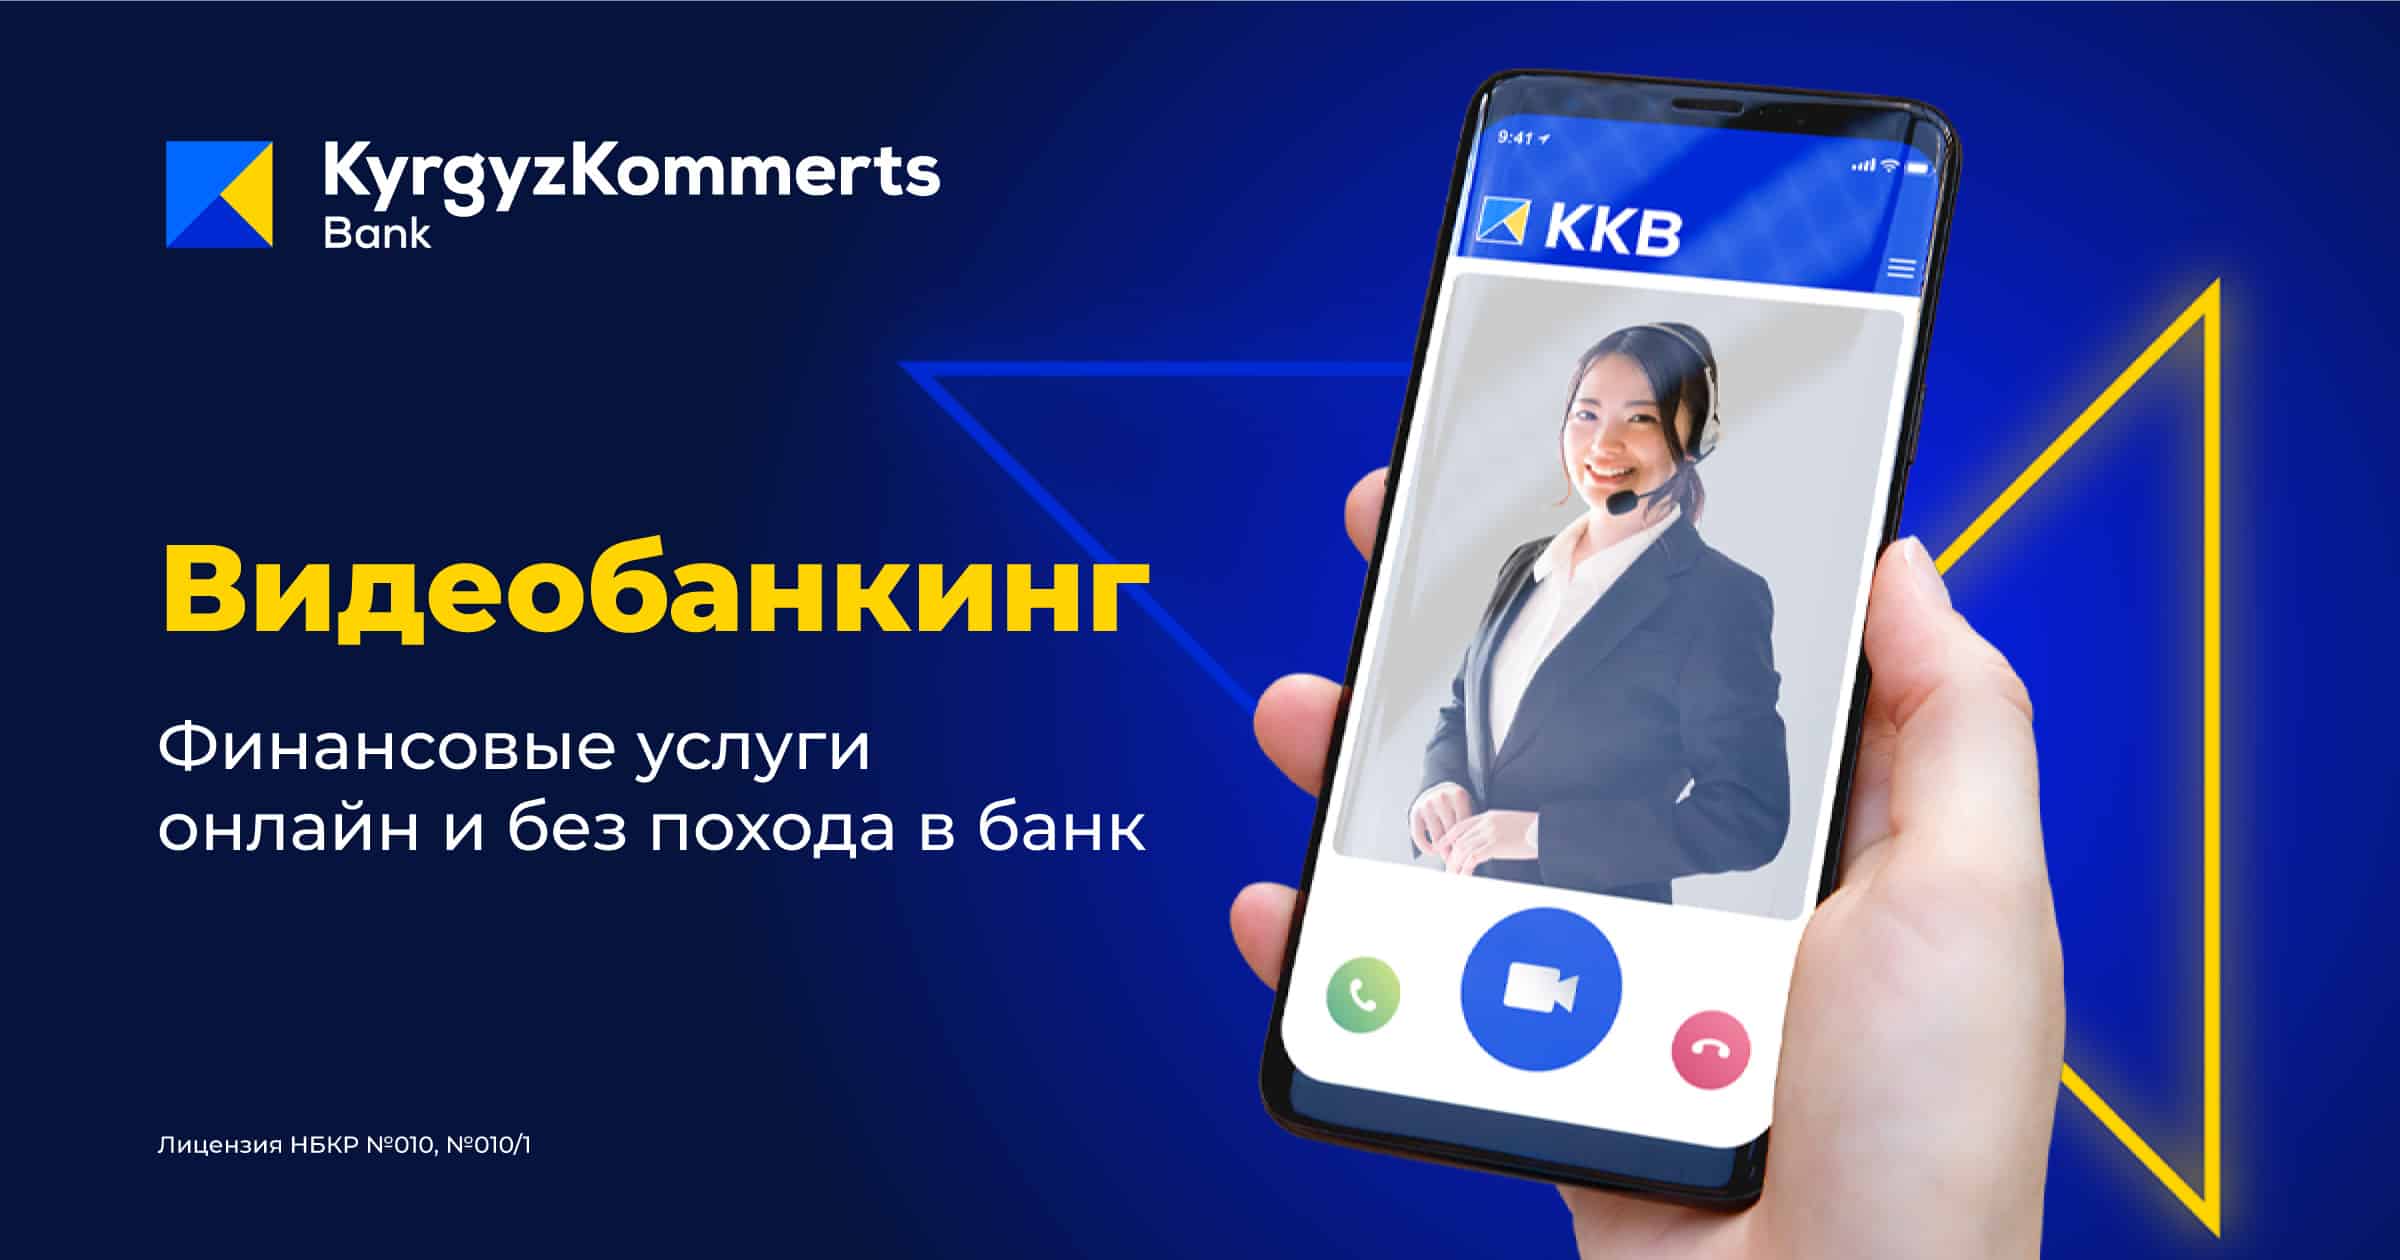 Впервые в Кыргызстане: видеобанкинг от Кыргызкоммерцбанка